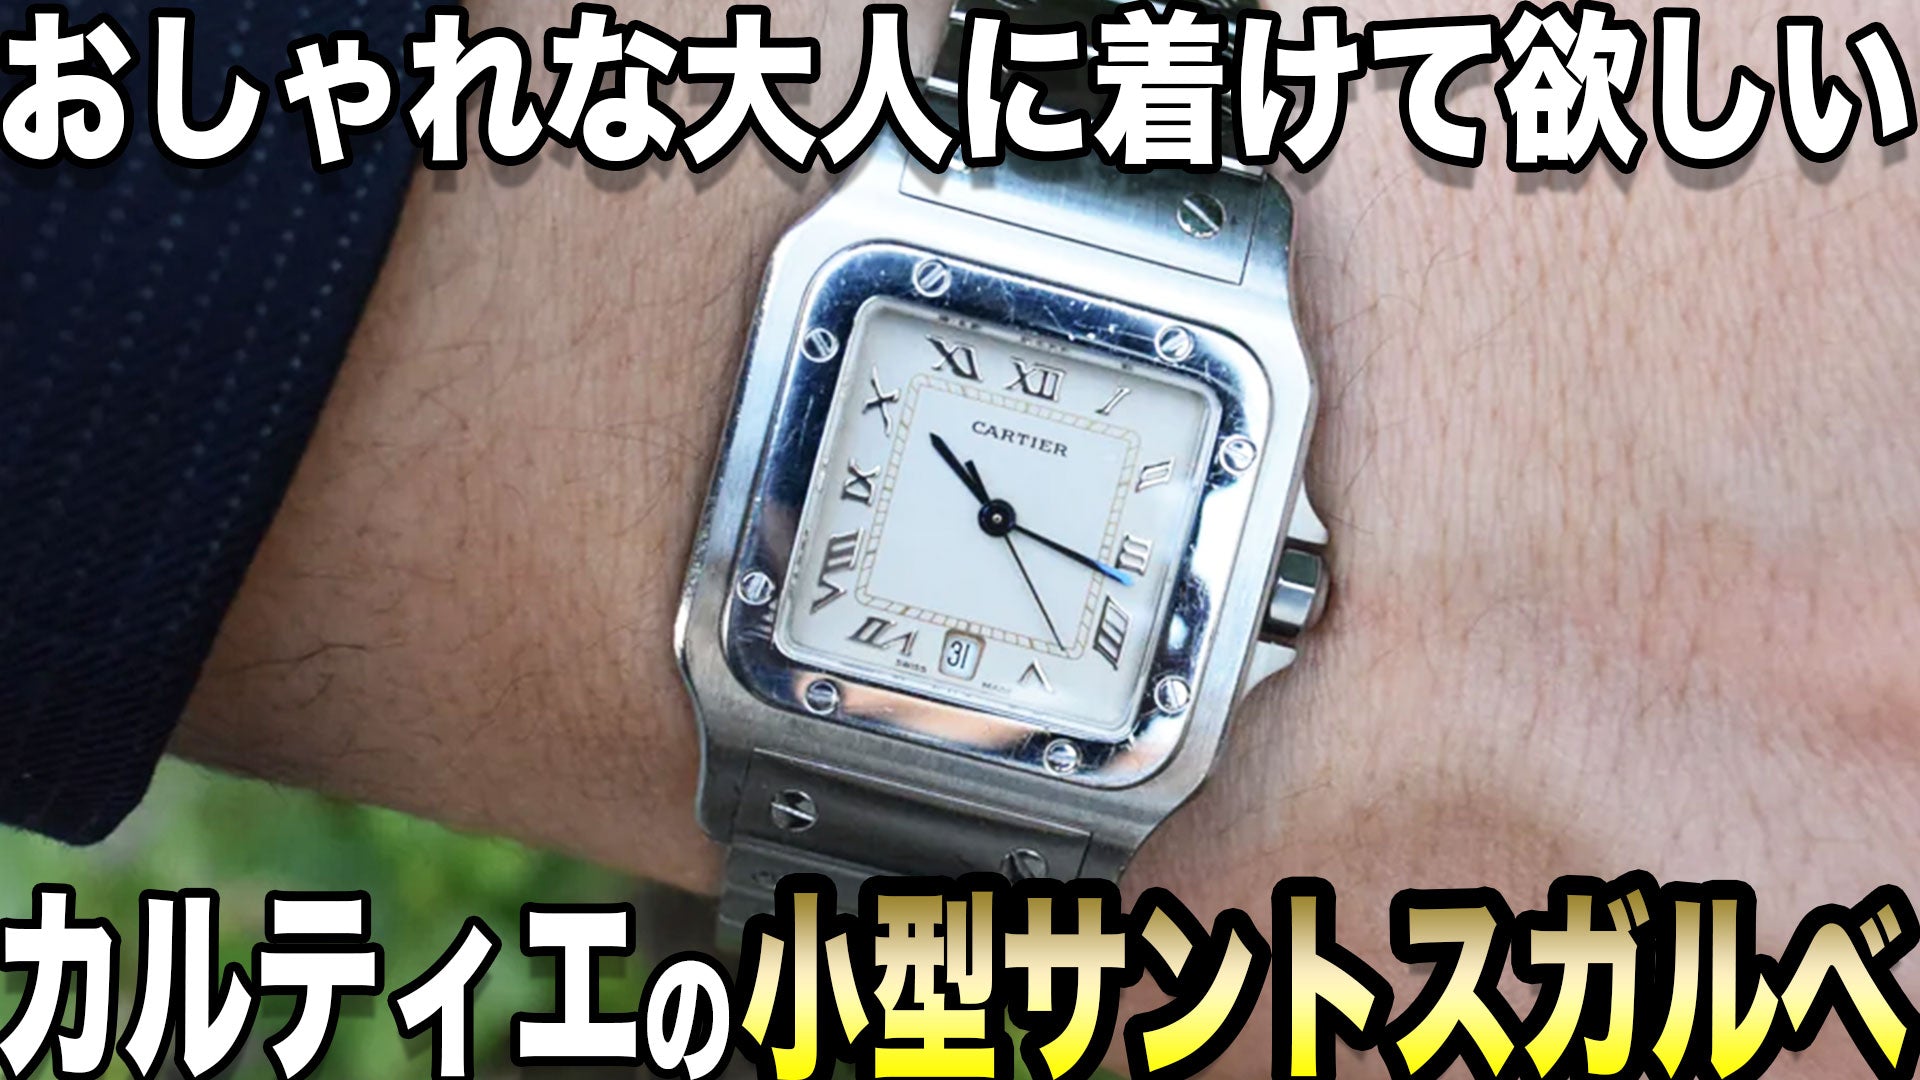 カルティエの腕時計『サントスガルべ』の魅力と違い